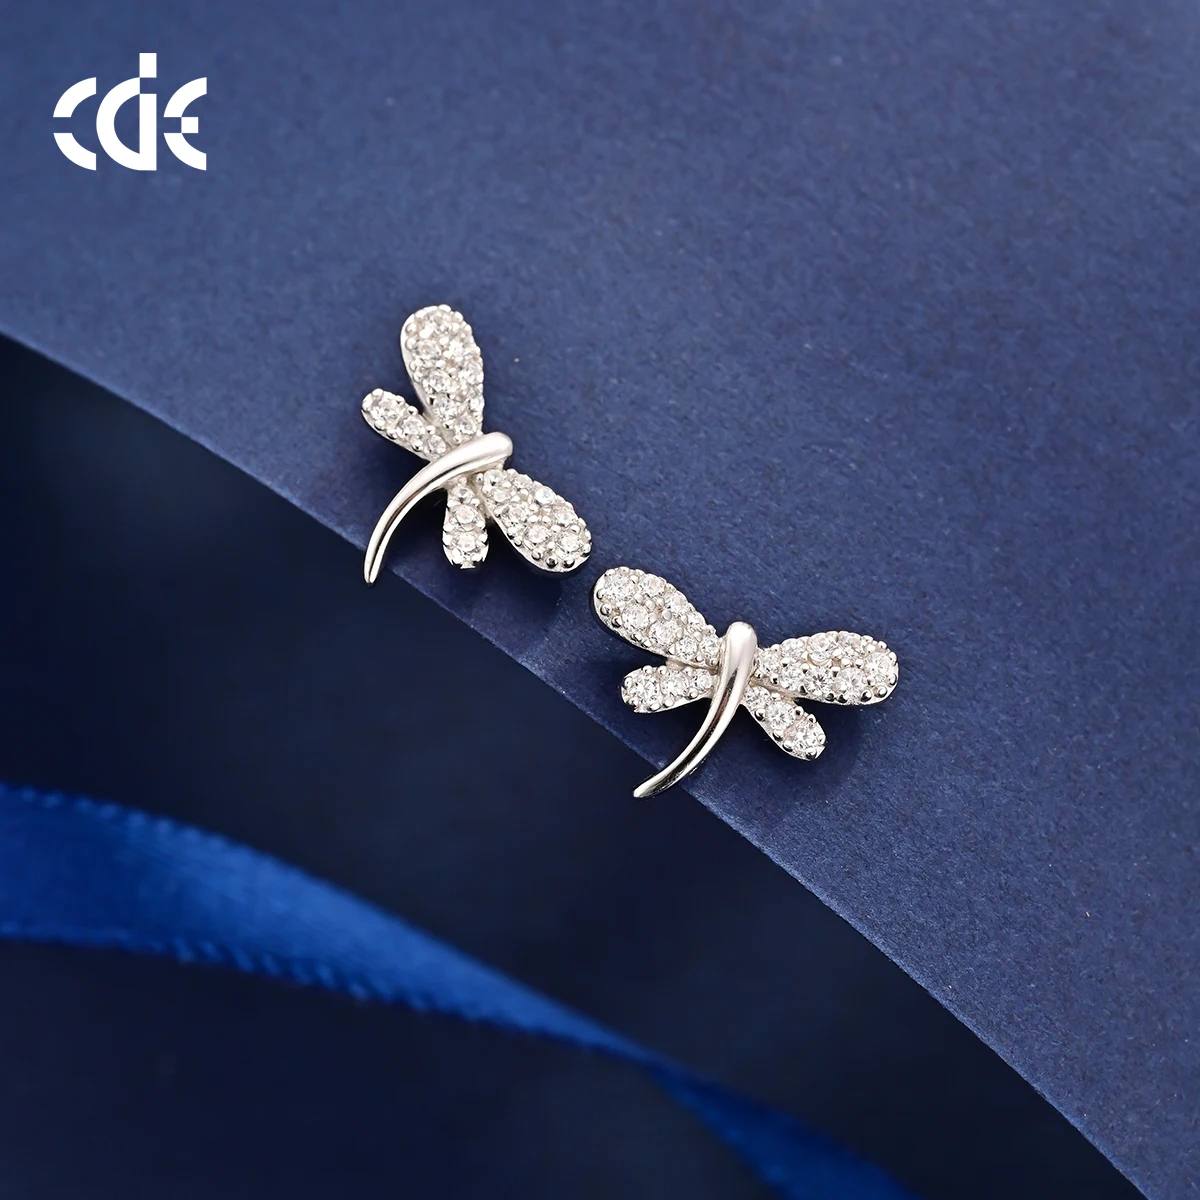 CDE CZYE007 Fine Jewelry Earring 925 Sterling Silver Zircon Earring Rhodium Plated Wholesale Women Dragonfly Stud Earrings